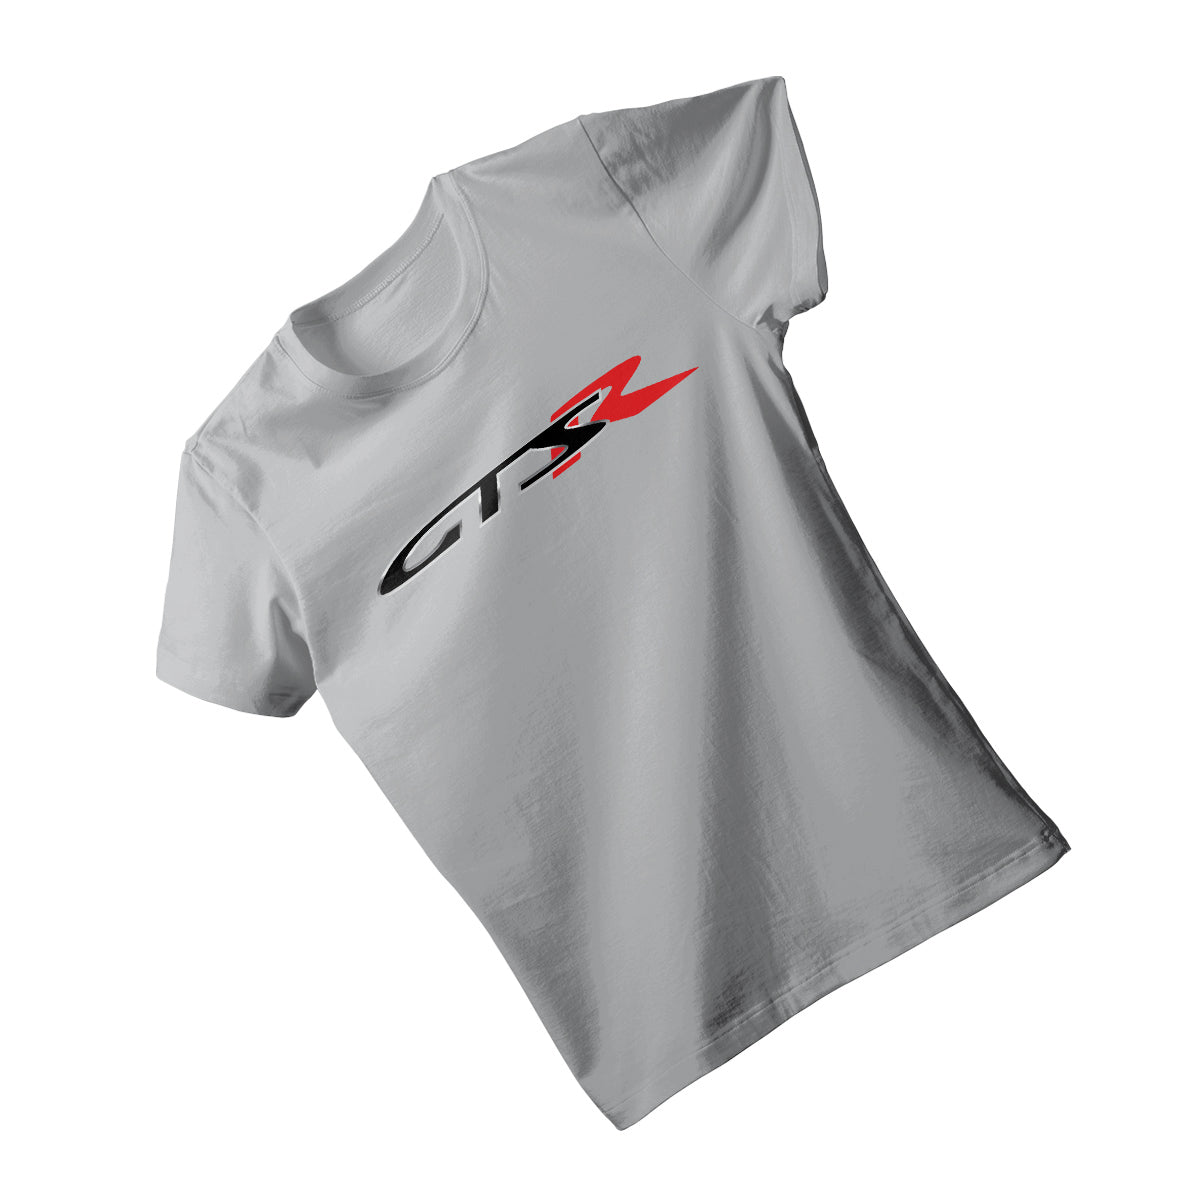 HSV GTS-R VS T-Shirt